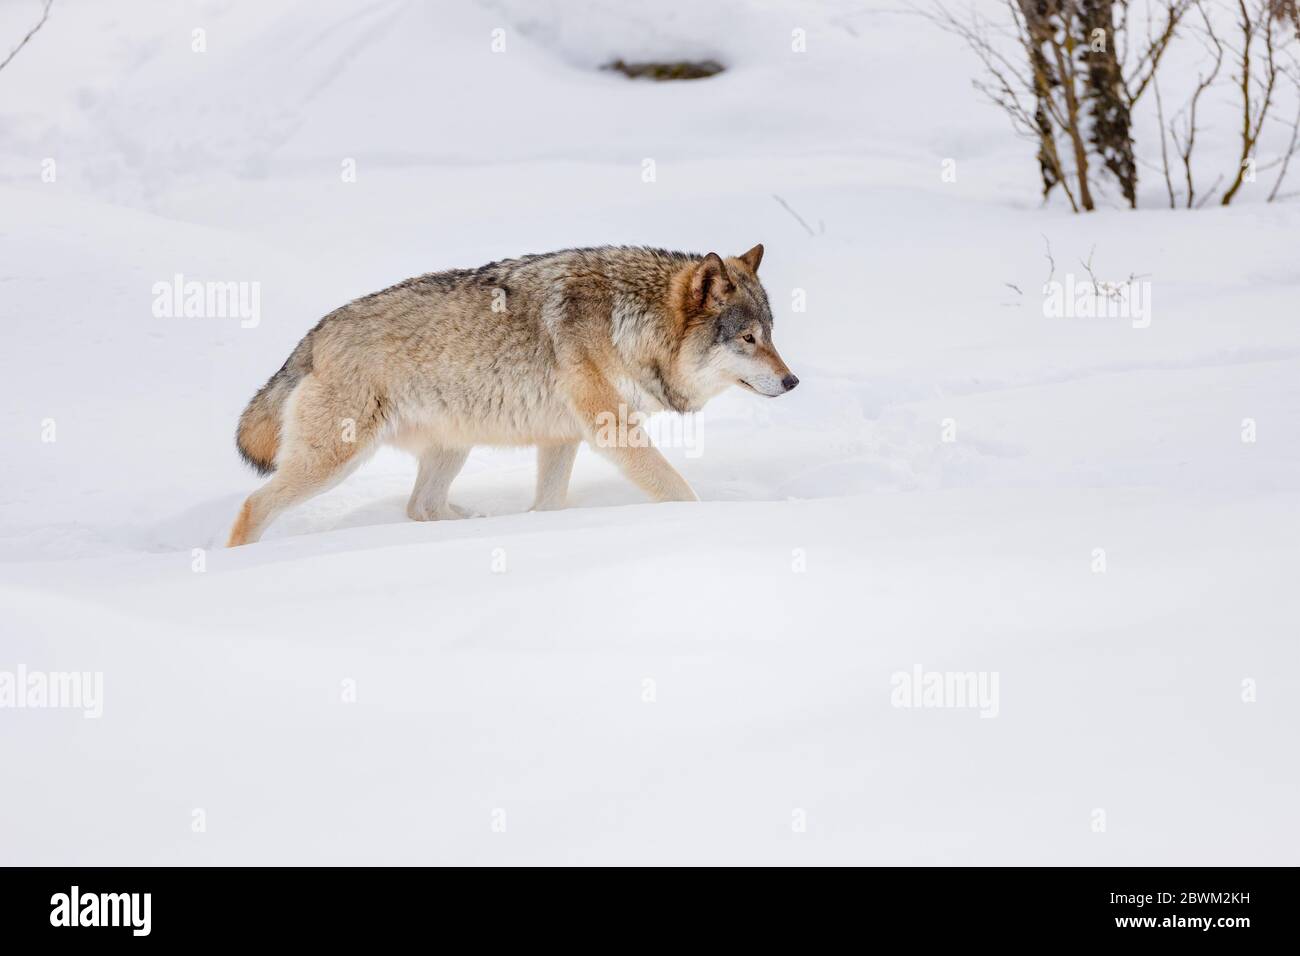 Vue latérale du loup eurasien qui se balade sur la neige Banque D'Images